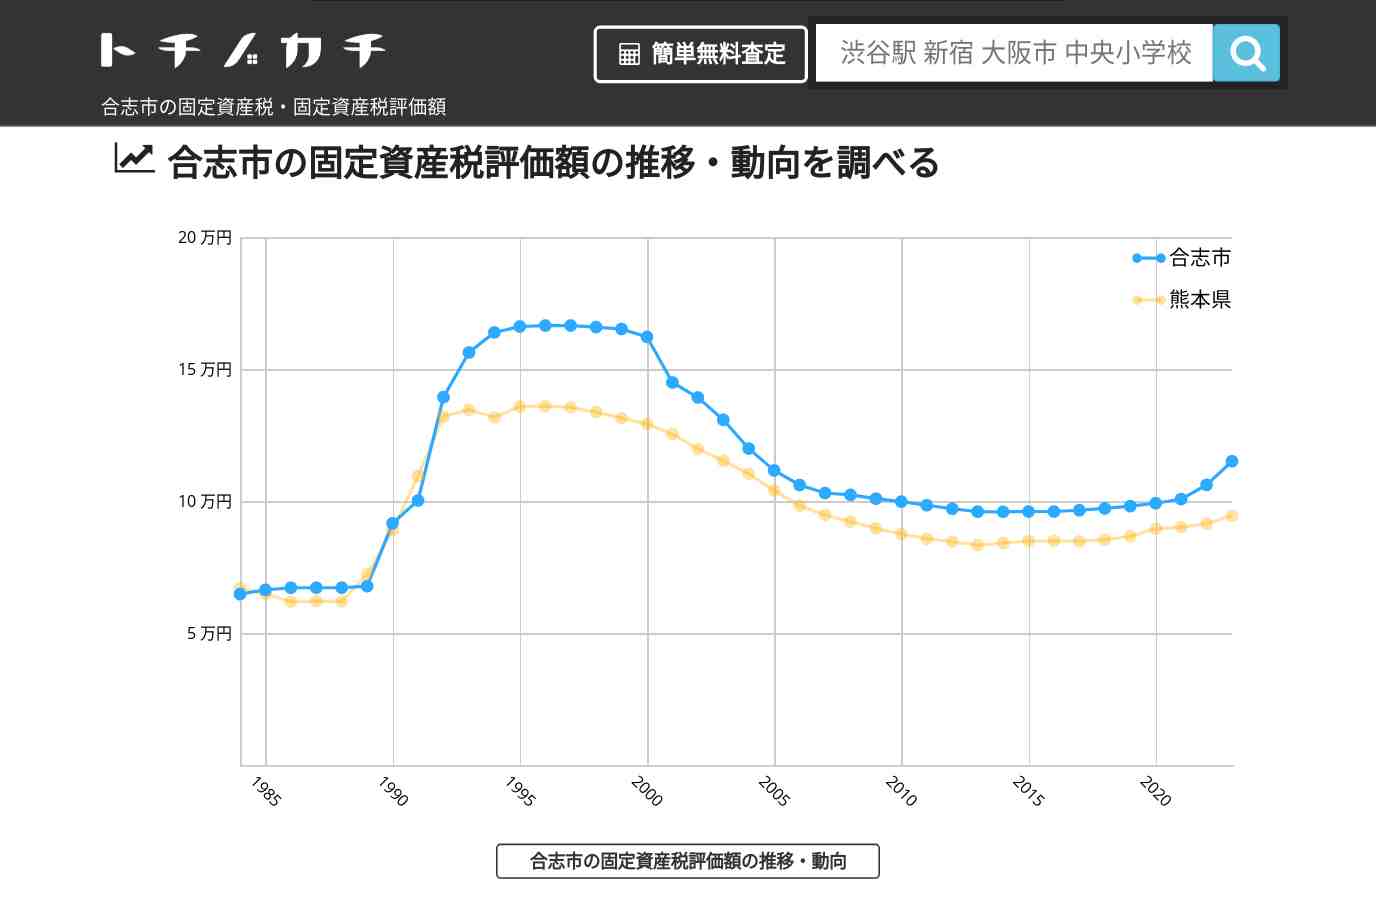 合志小学校(熊本県 合志市)周辺の固定資産税・固定資産税評価額 | トチノカチ